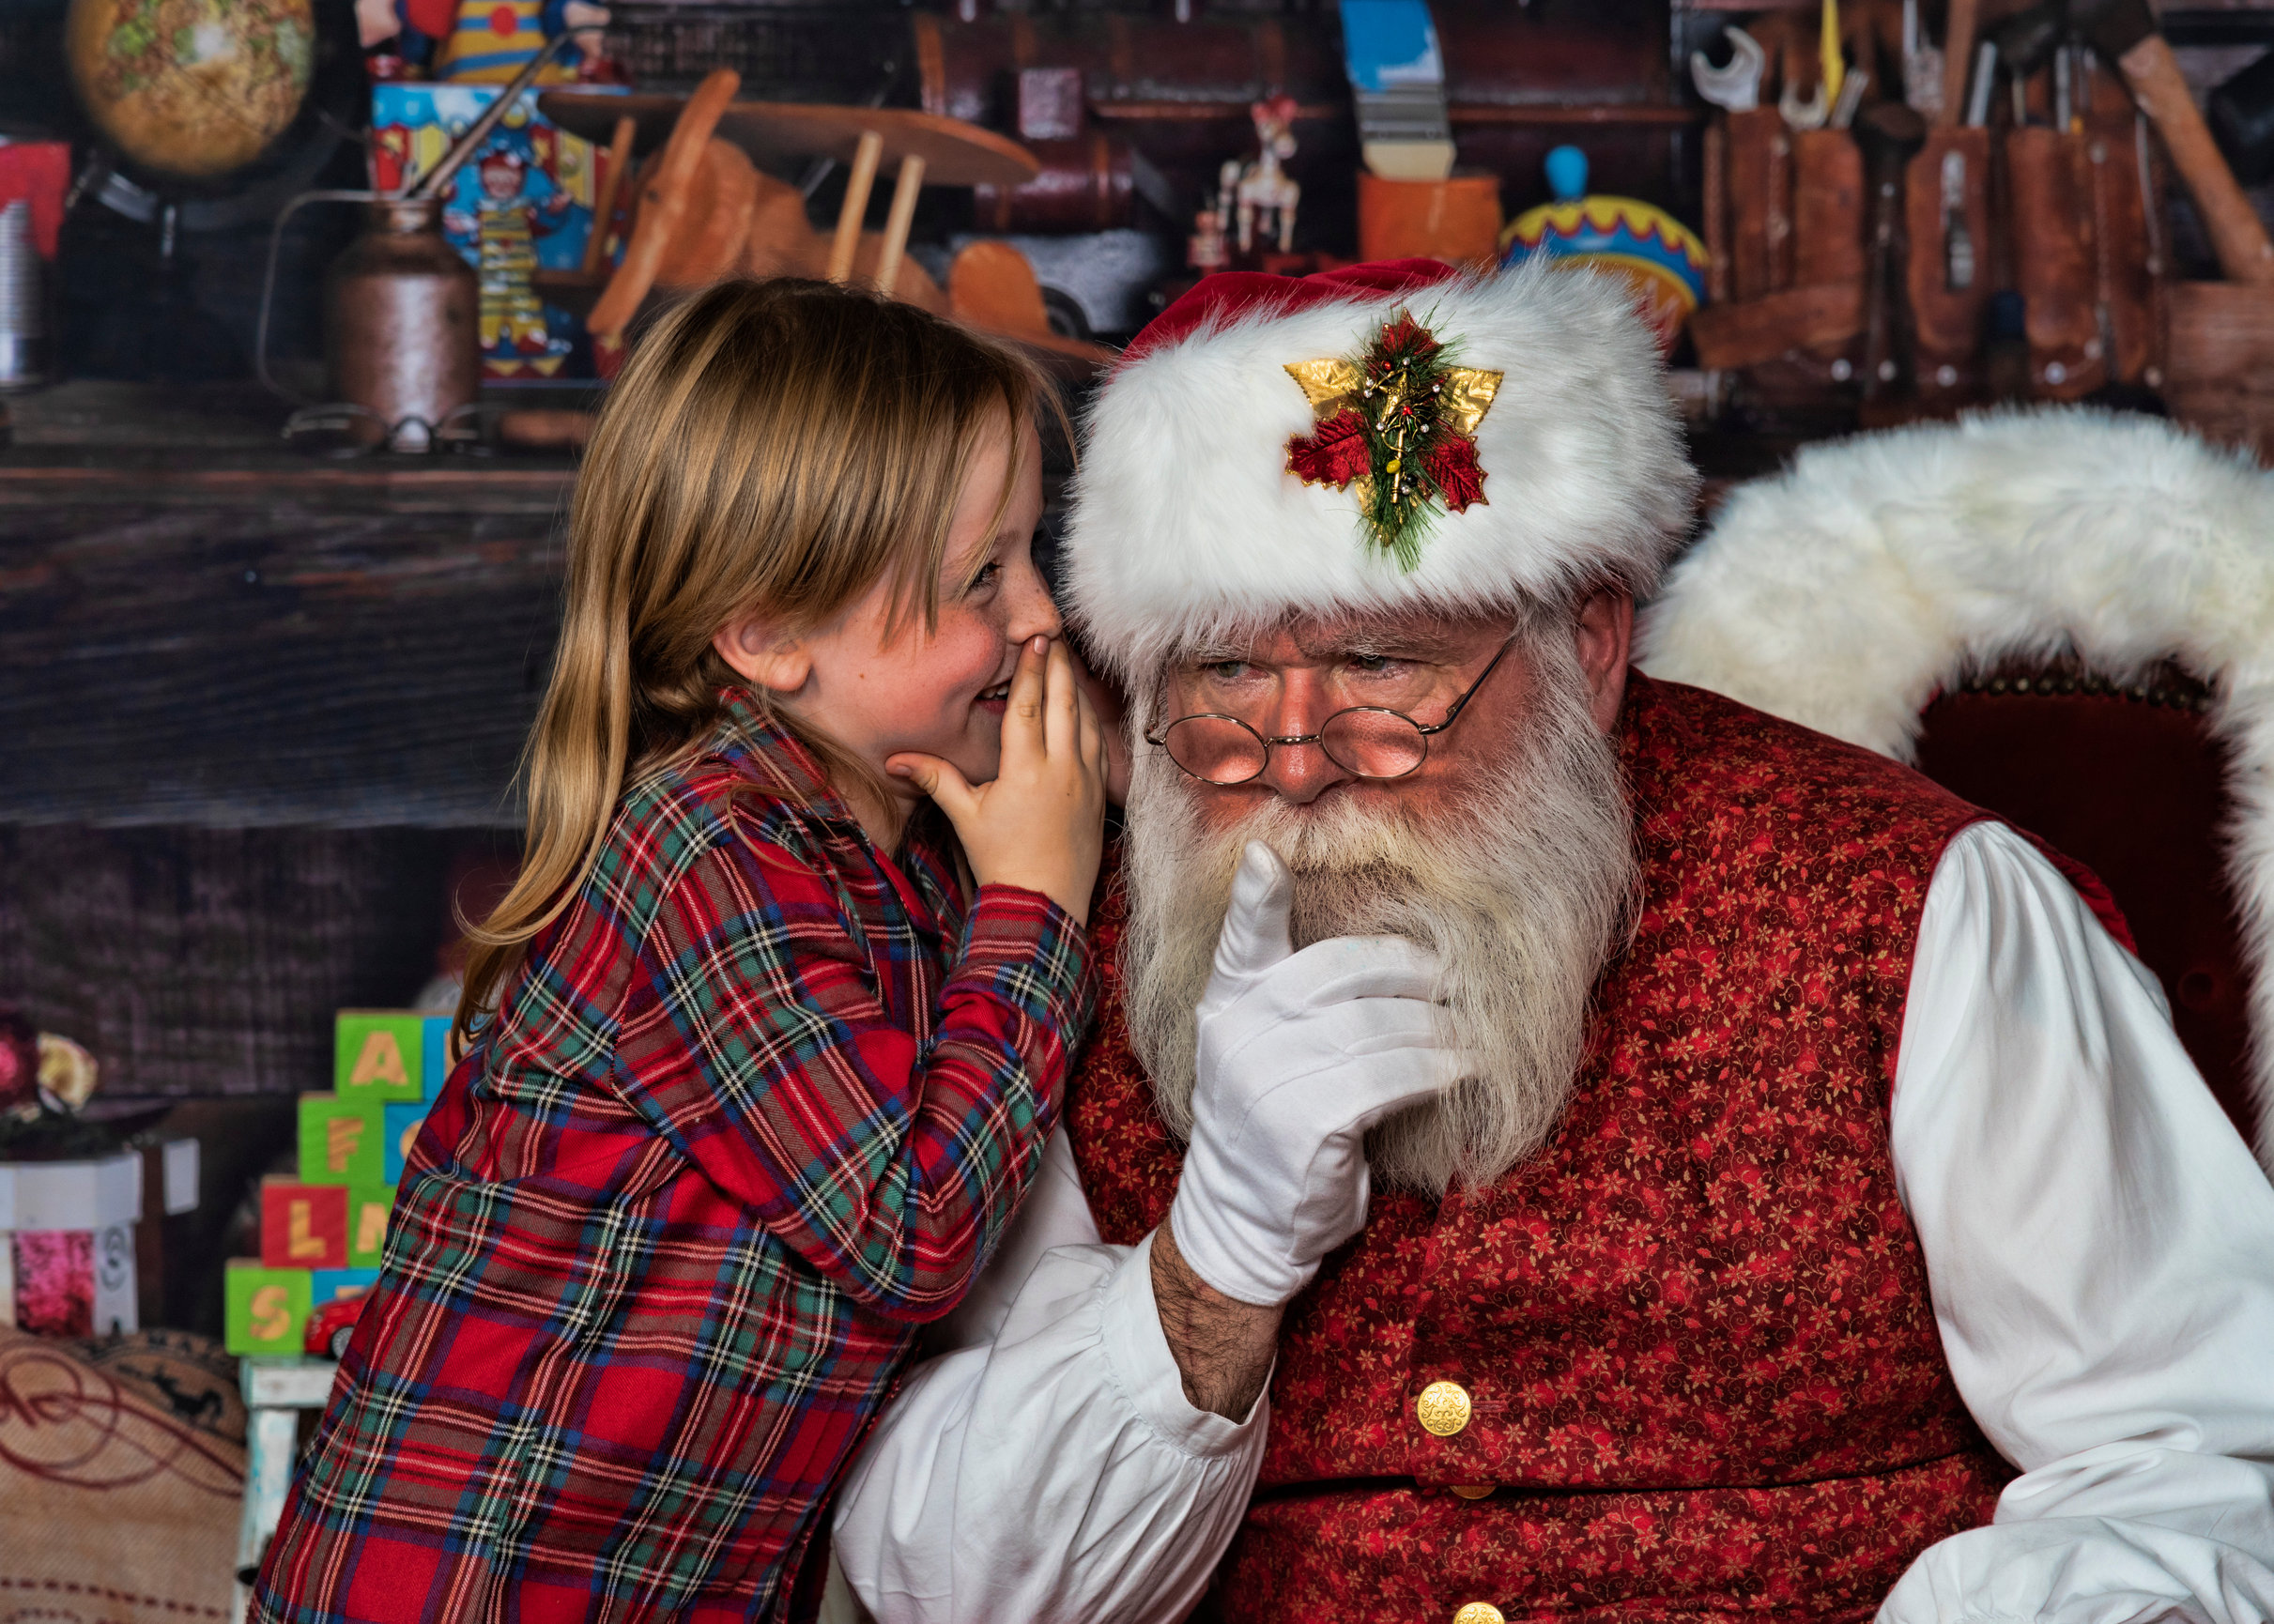 Little boy whispering into Santa's ear